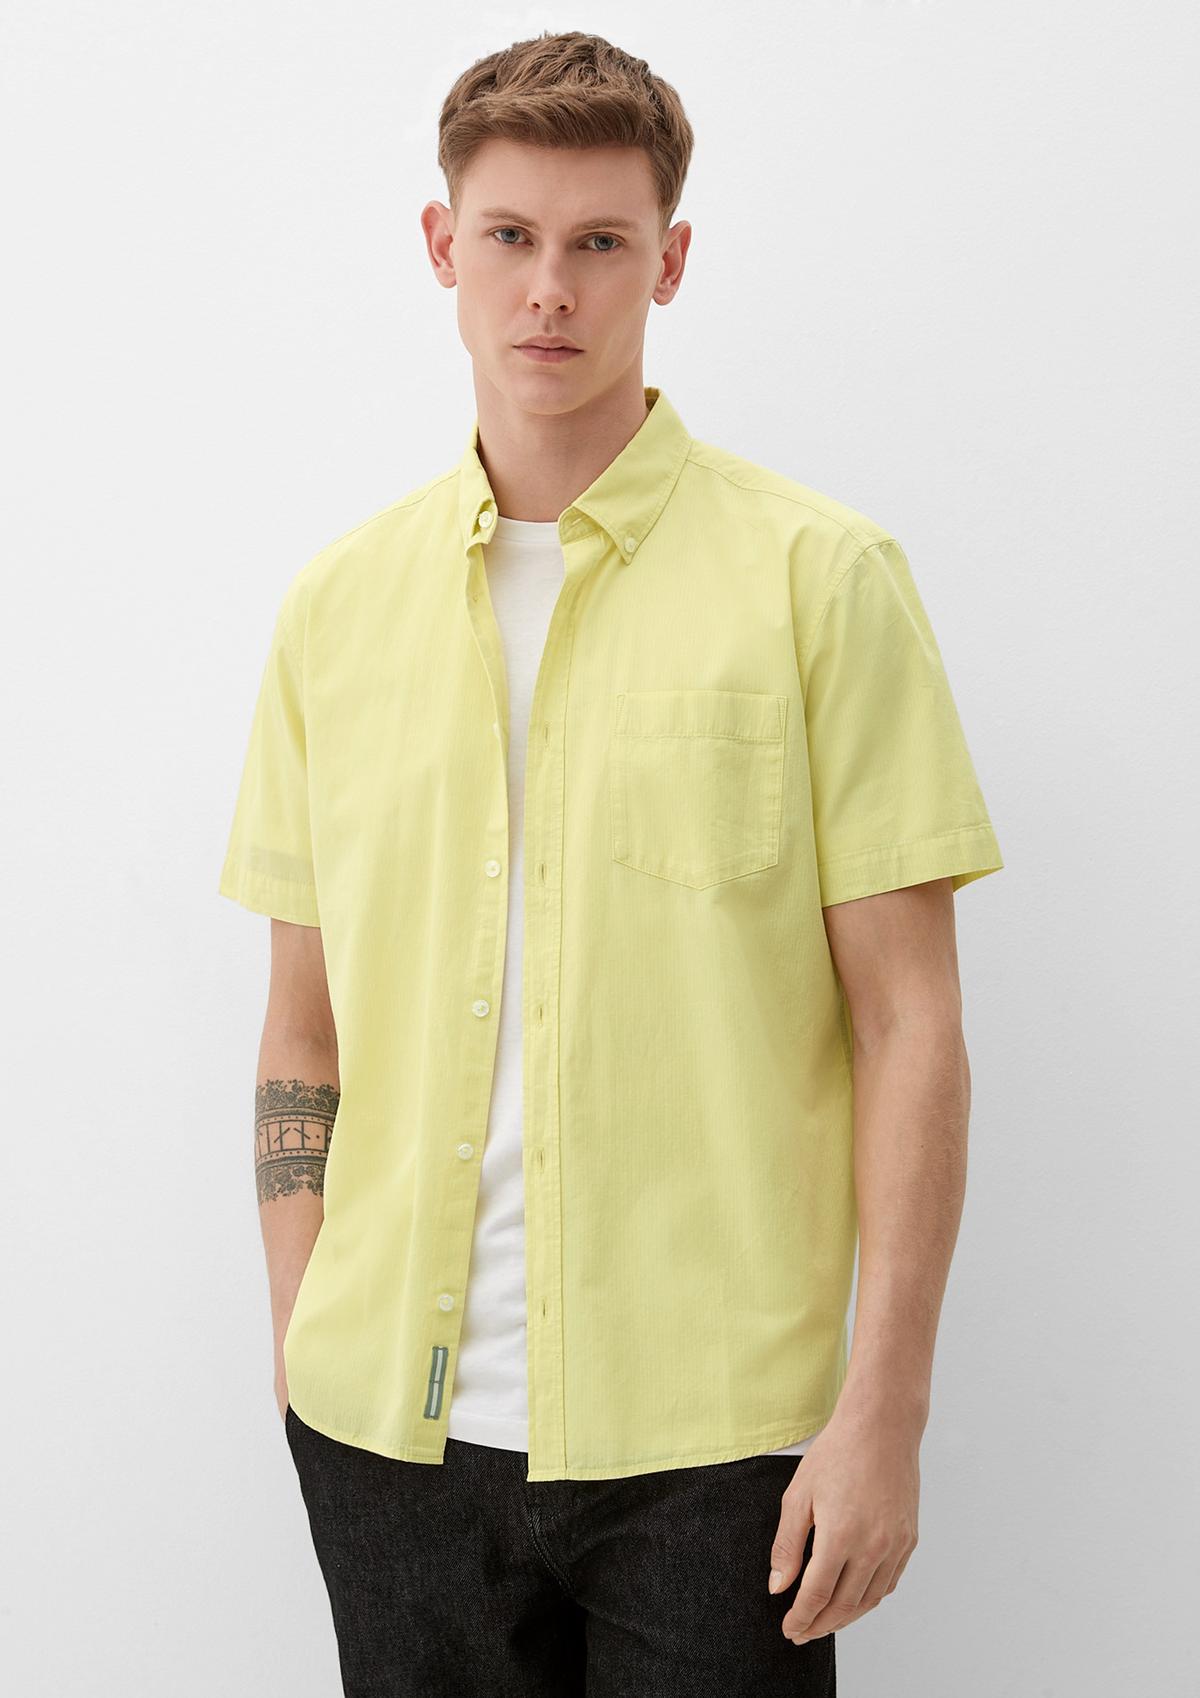 Kurzarm-Hemden Herren kaufen Halbarm-Hemden für online &